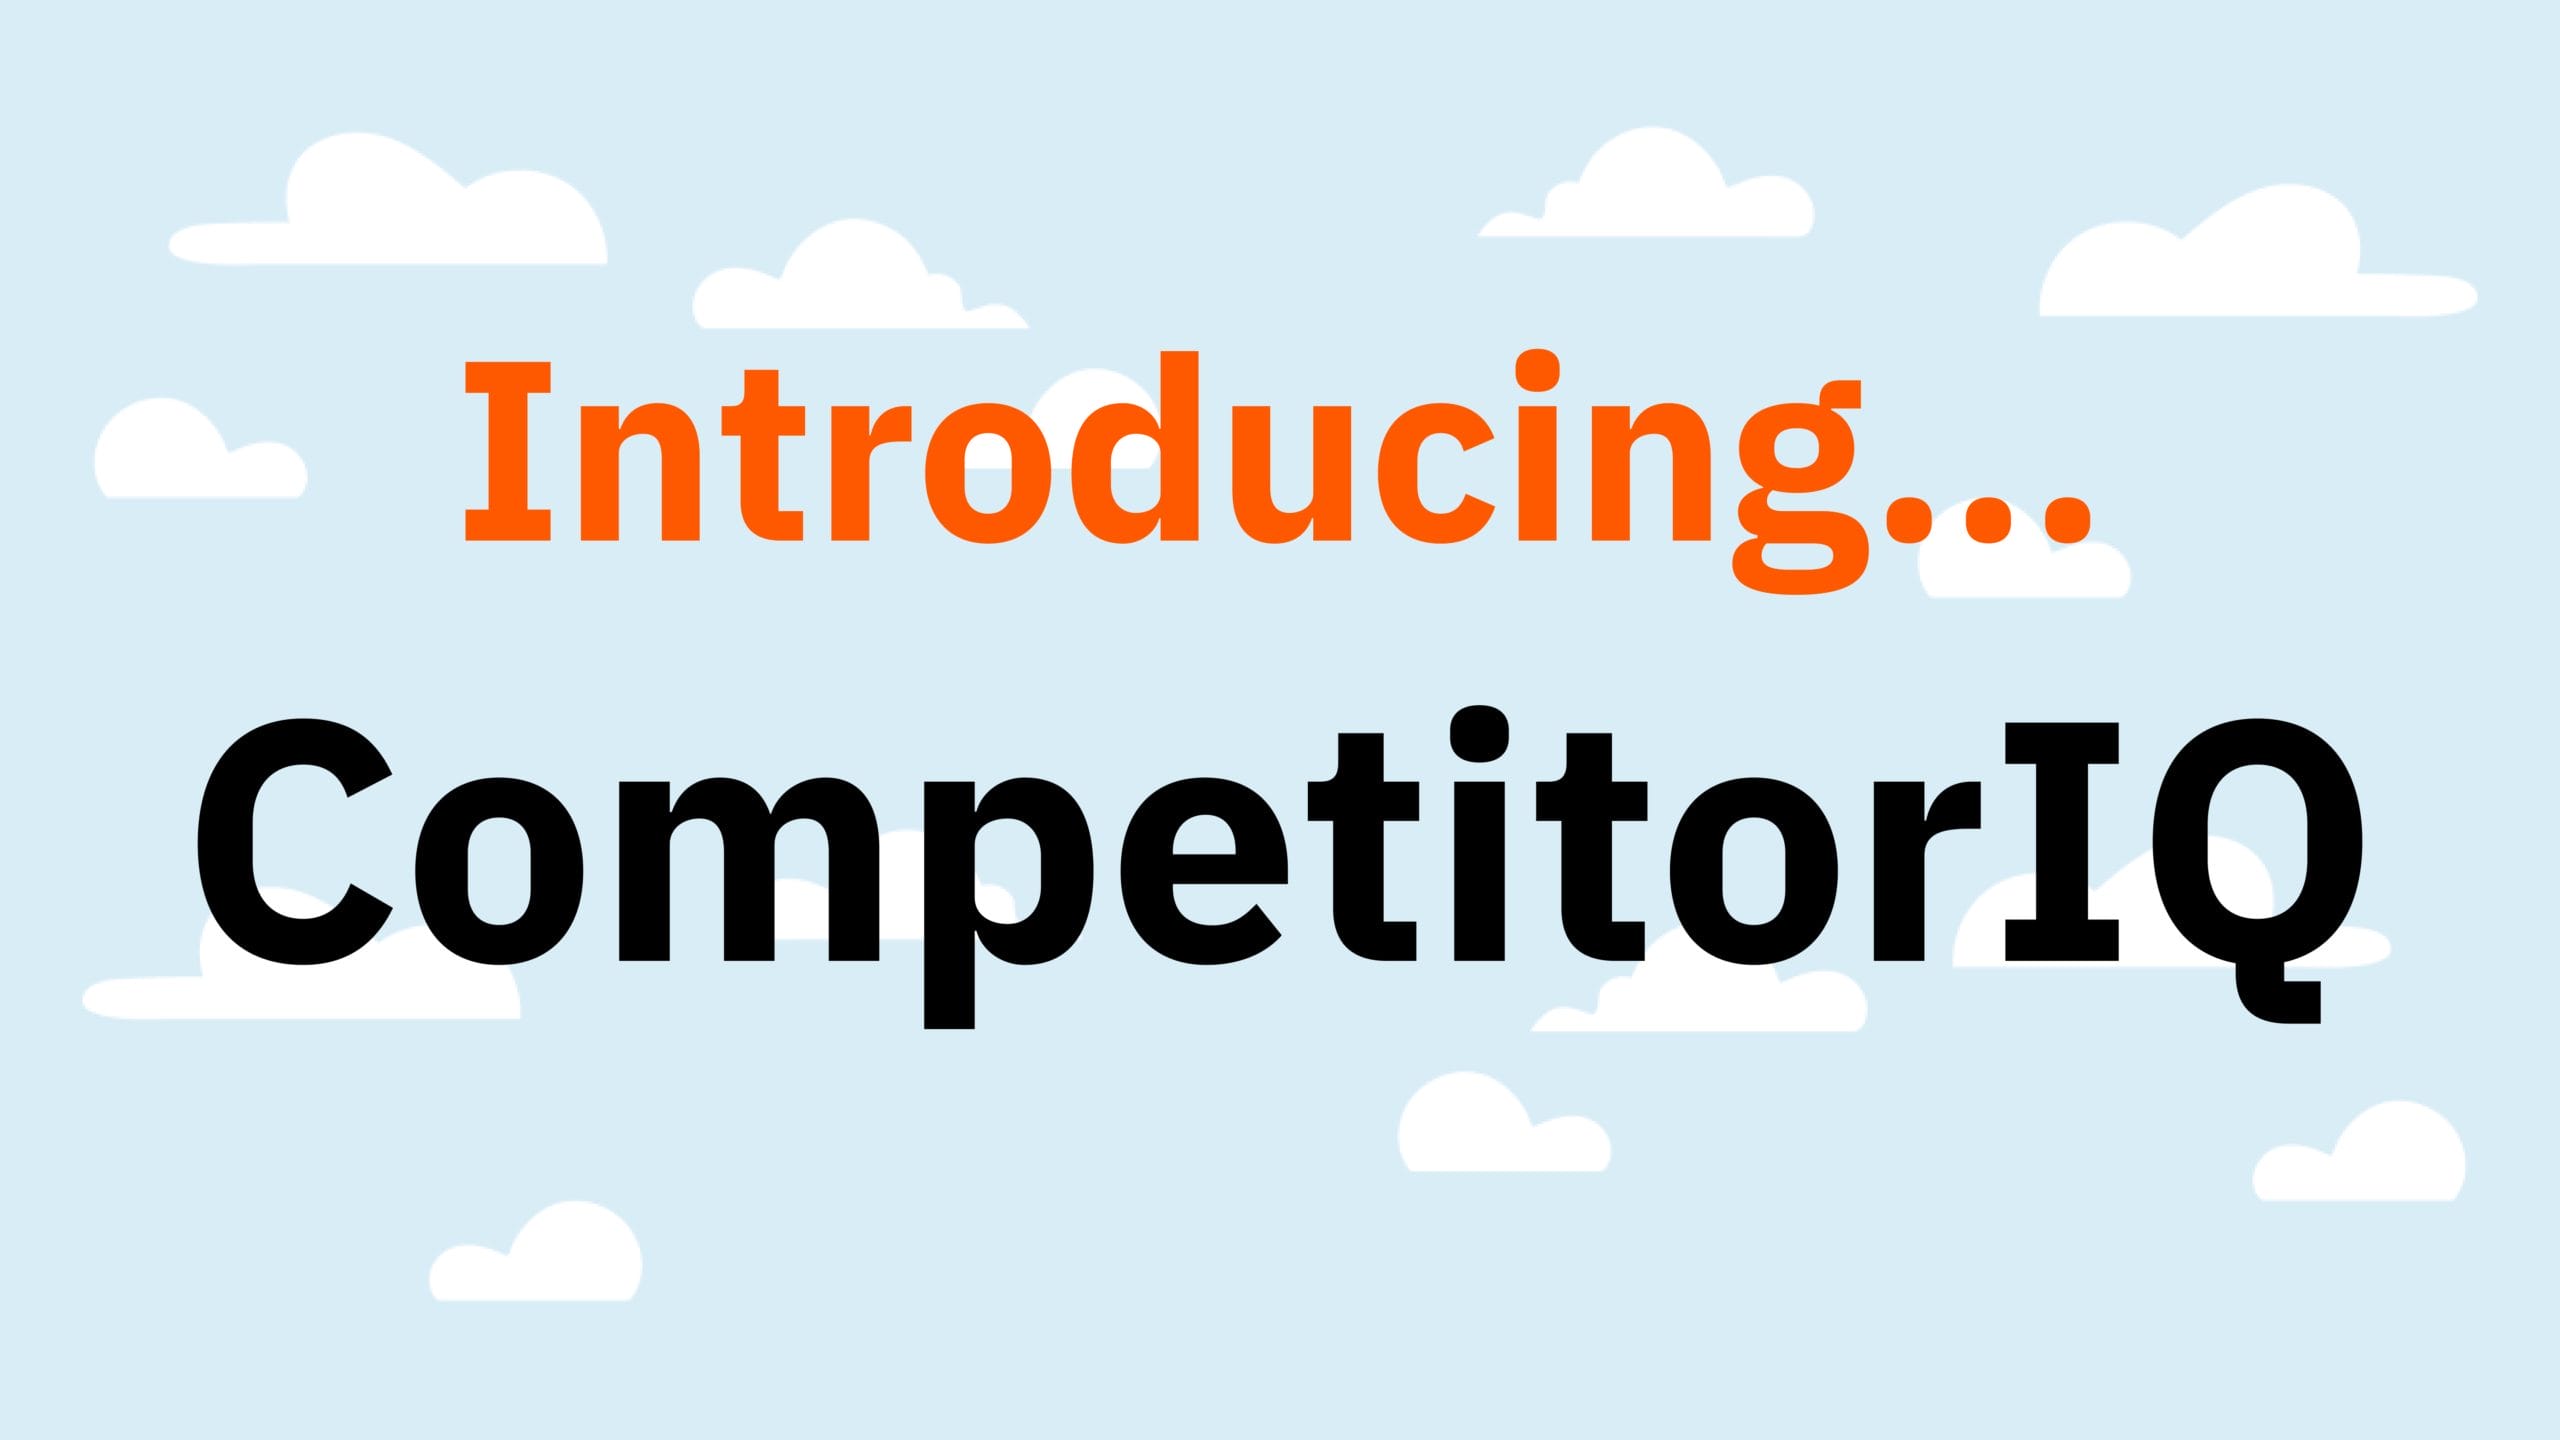 Introducing CompetitorIQ graphic